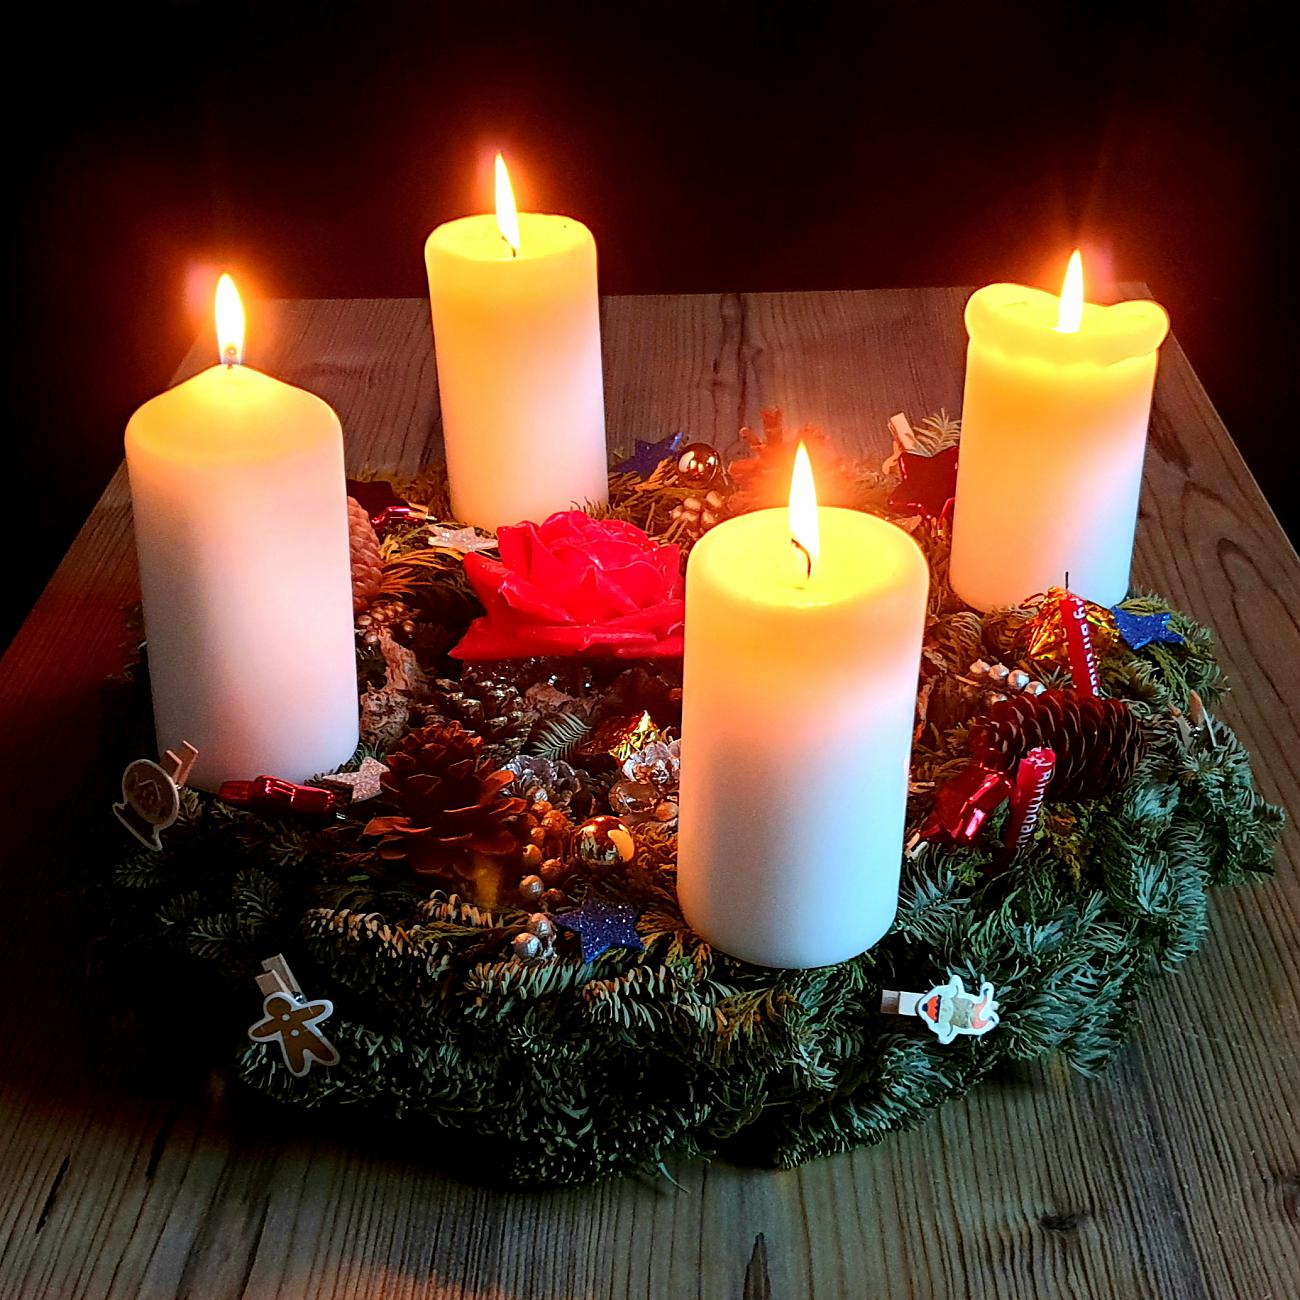 Foto: Martin Zehrer - Sonntag, 20. Dezember 2020...<br />
<br />
Es ist vollbracht... wenn die Liebe die 4. Kerze entzündet ;-)<br />
<br />
Die 4. Kerze brennt, es strahlt der ganze Advents-Kranz. Noch 4 Tage bi 